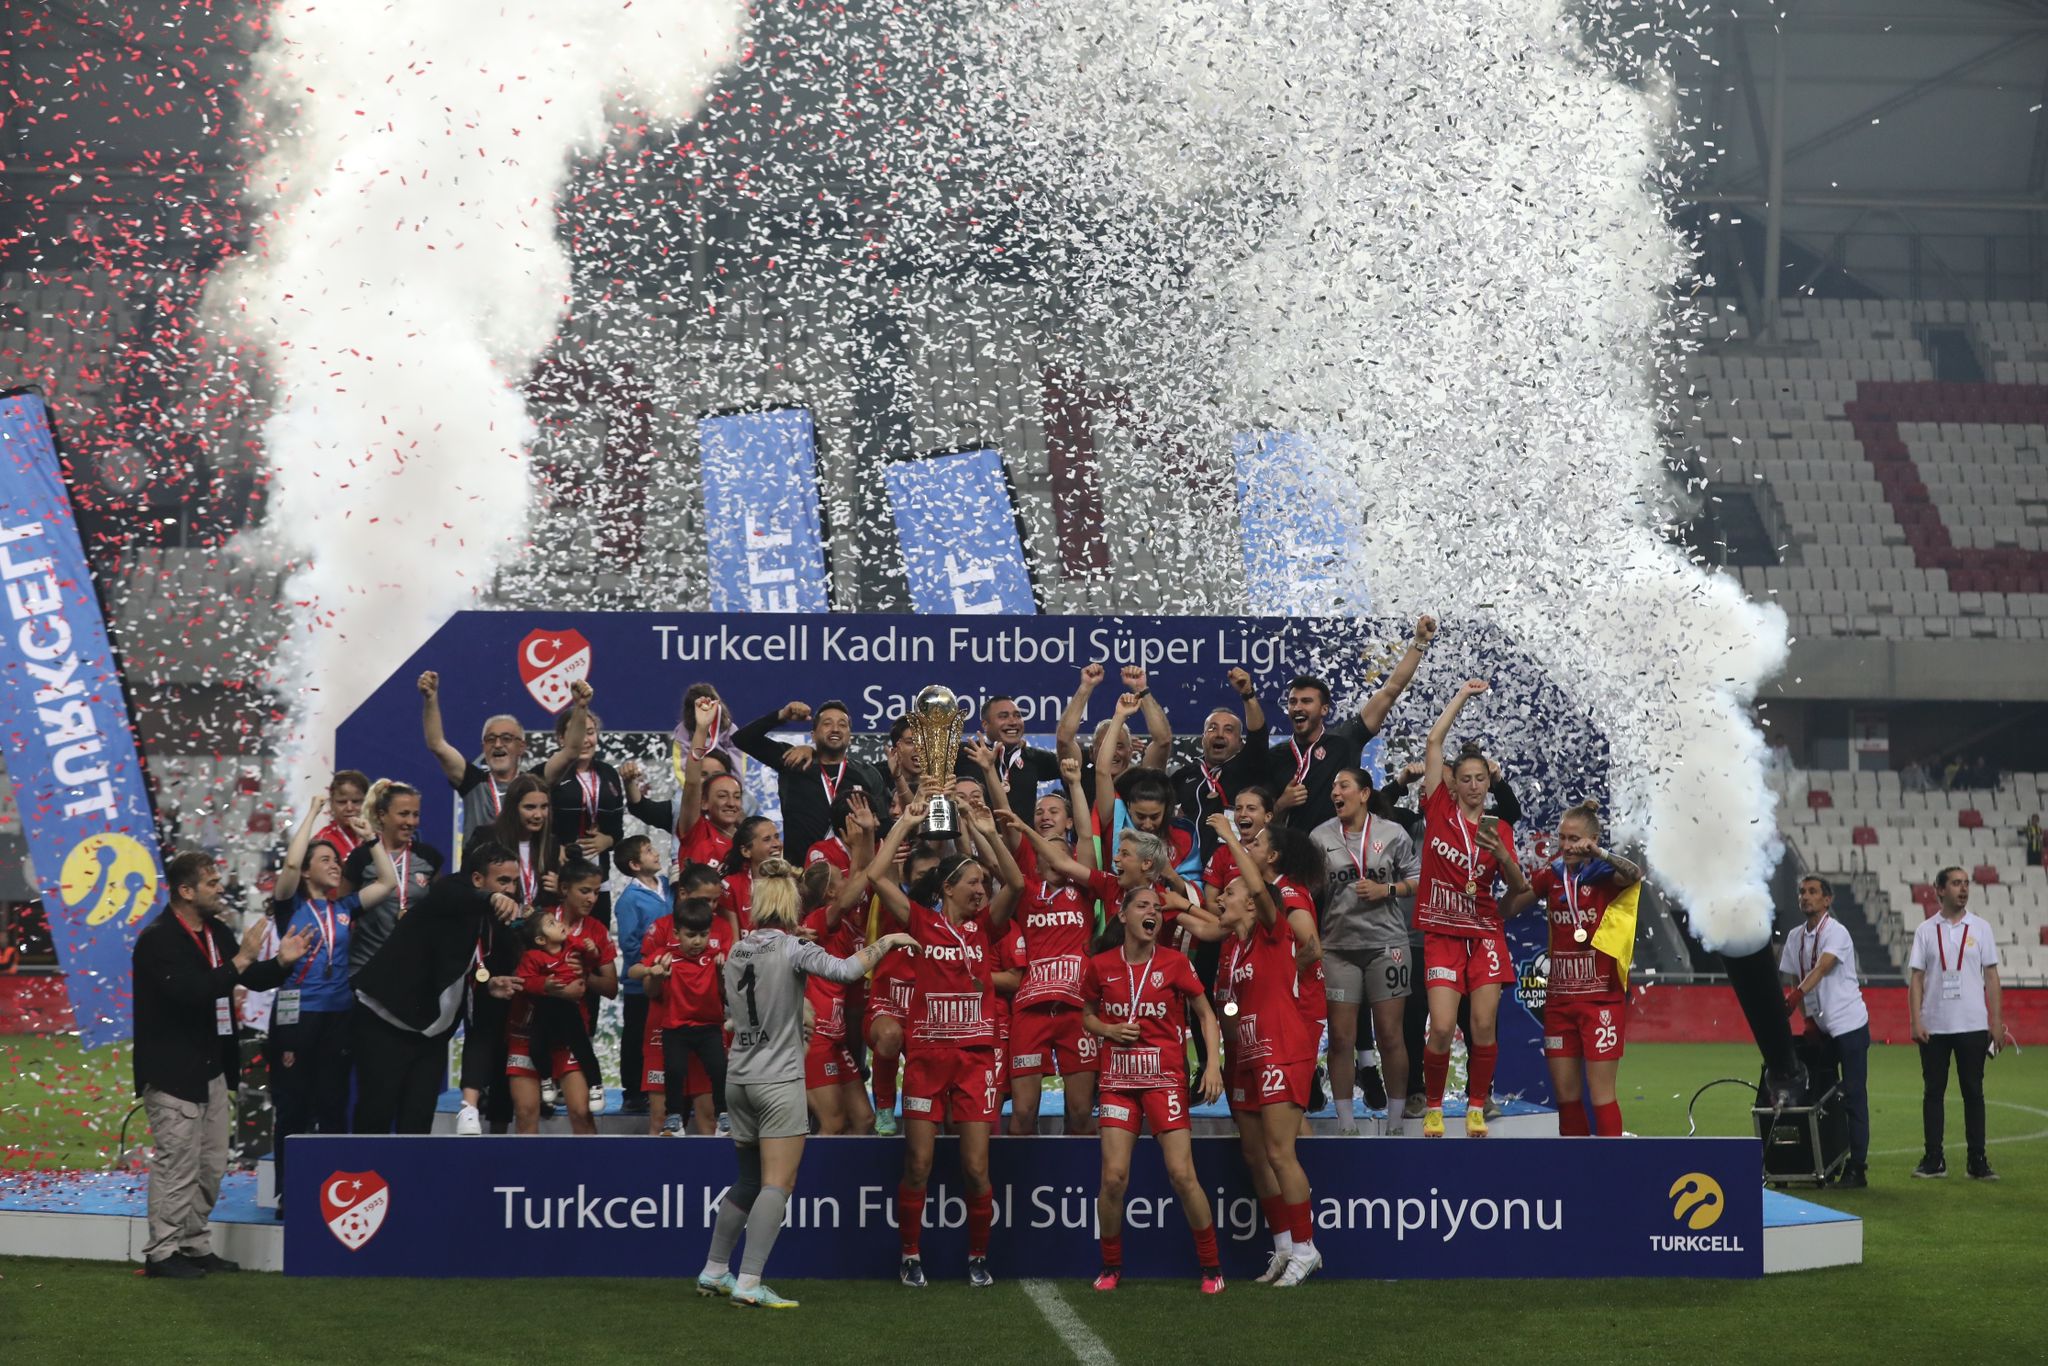 Turkcell Kadın Futbol Süper Ligi’nde şampiyon Ankara Büyükşehir Belediyesi FOMGET G.S.K